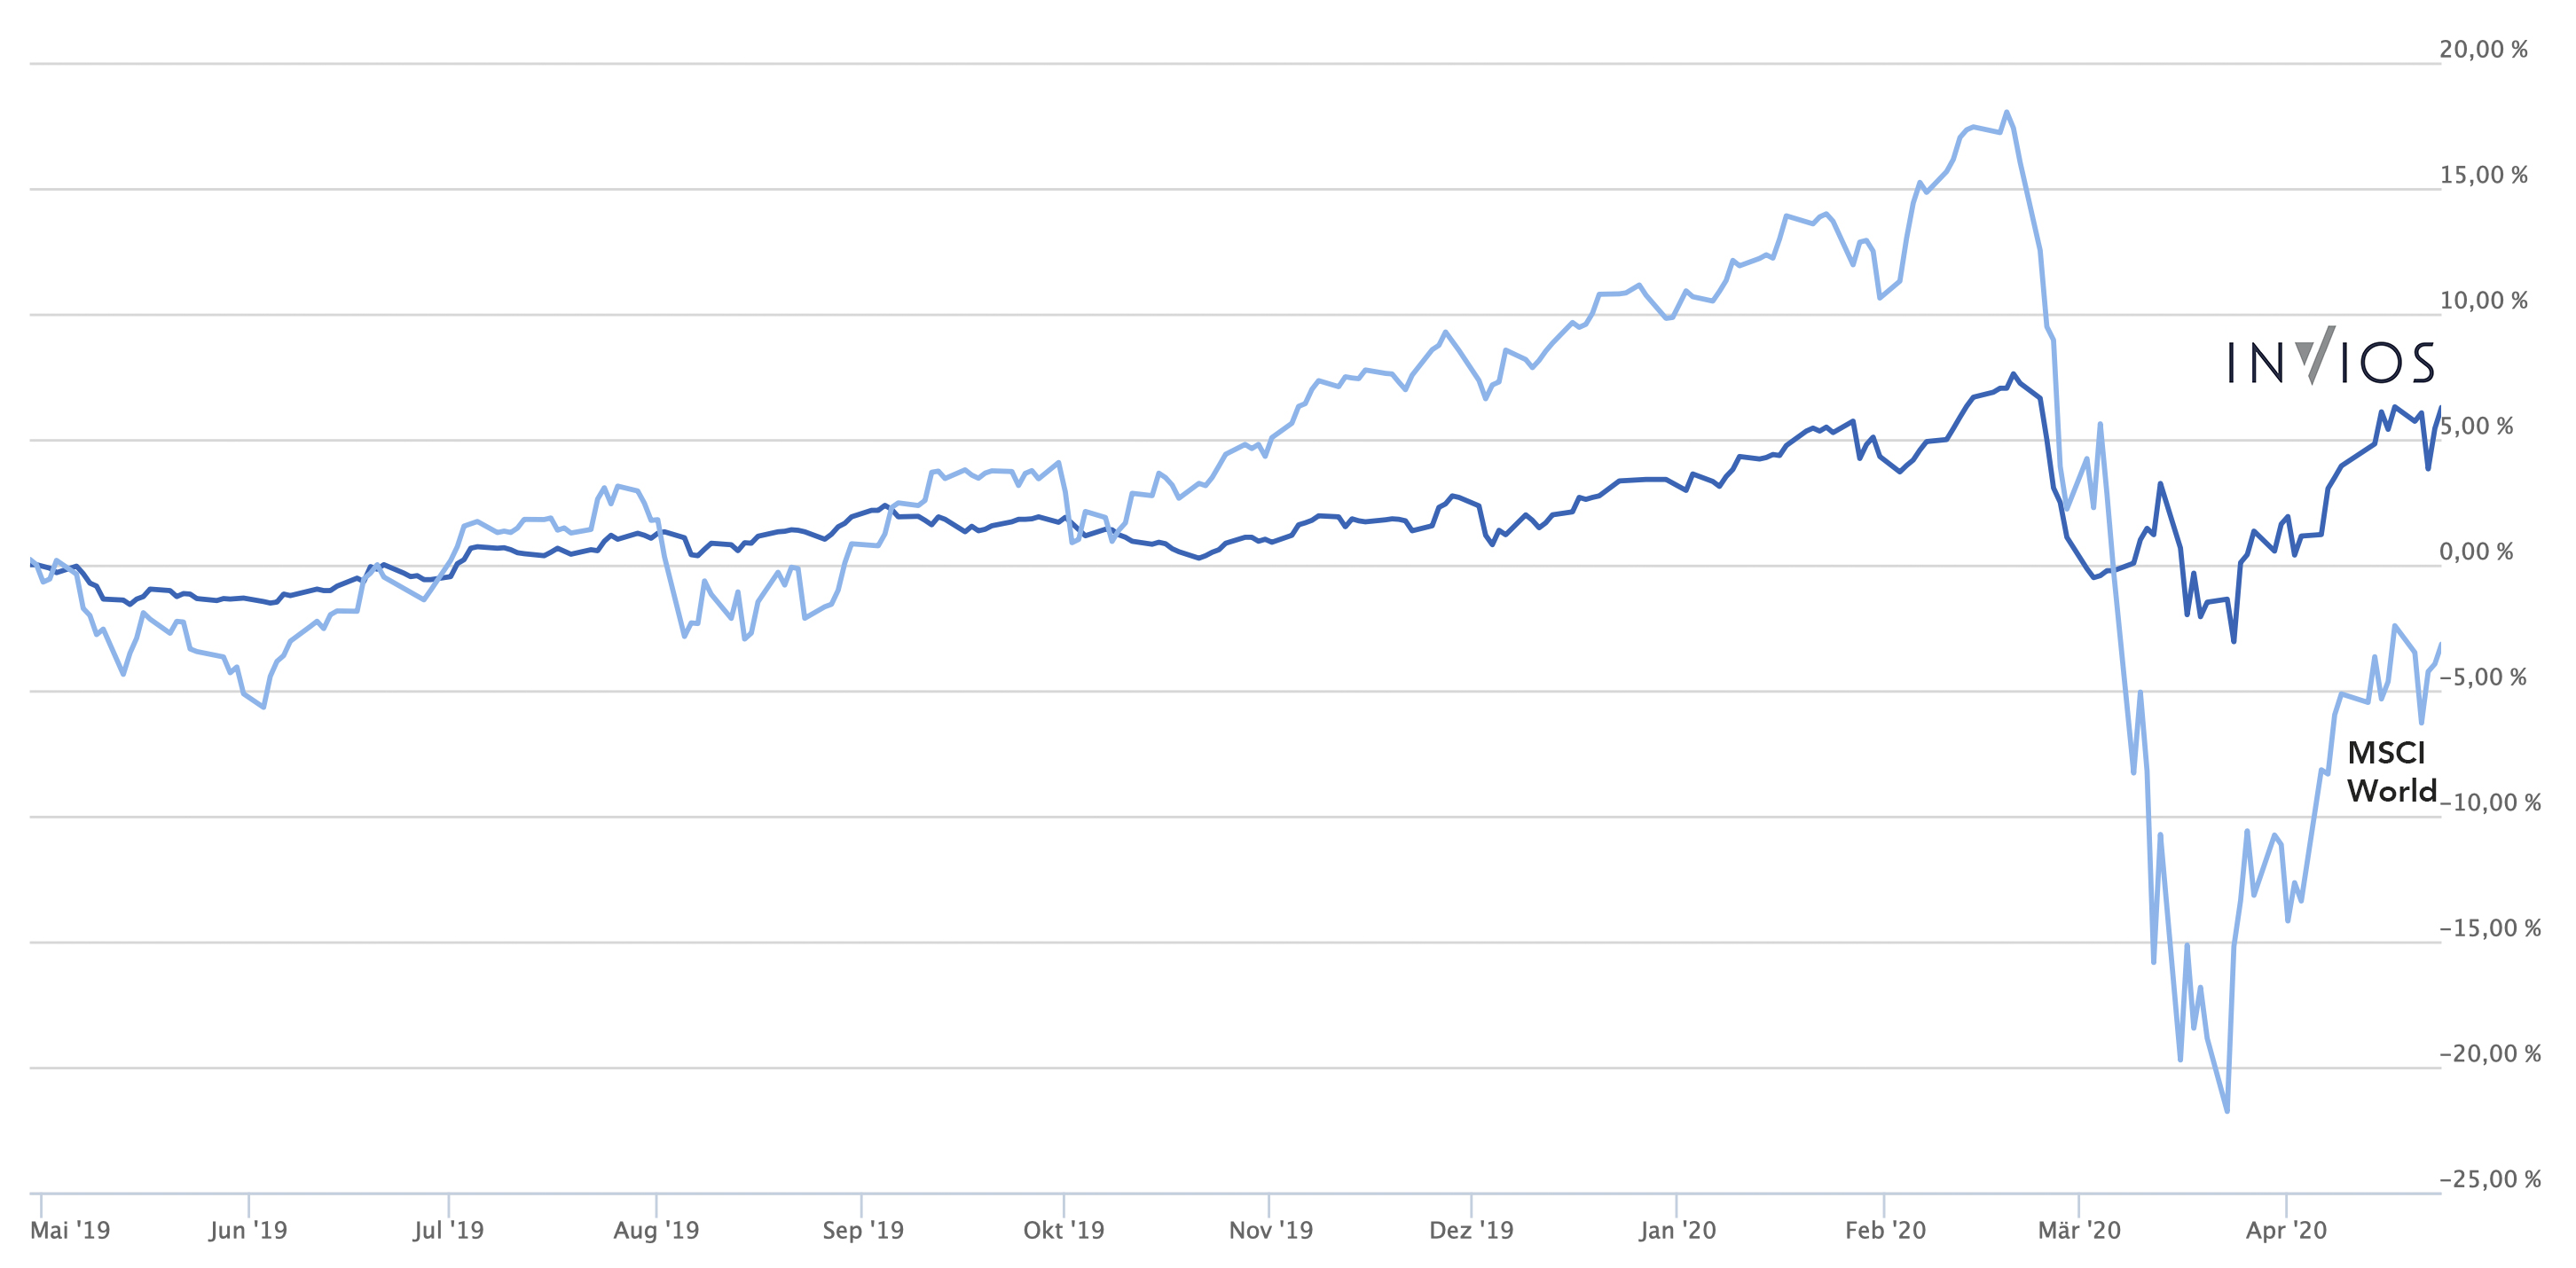 12-Monats-Chart, das INVIOS im Vergleich zum MSCI World zeigt – mit rund 10 % Vorsprung